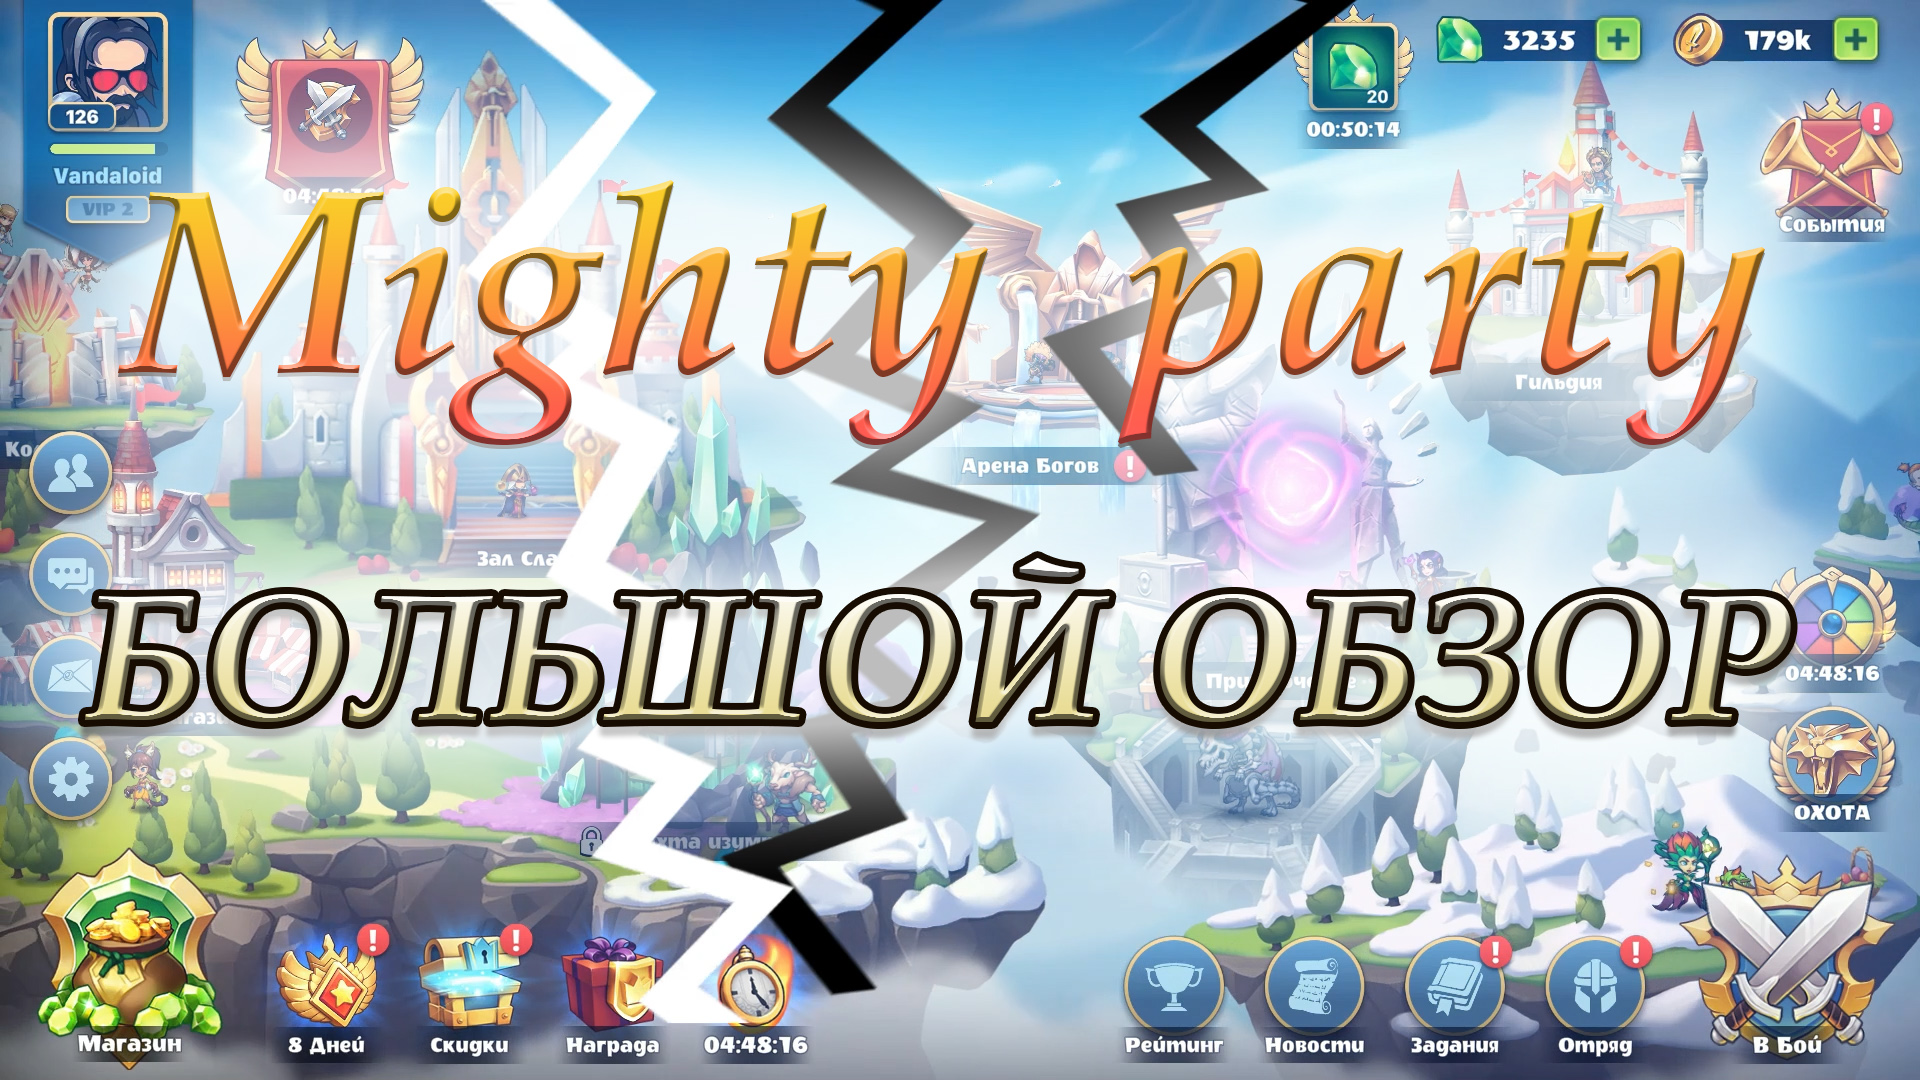 Mighty party / большой обзор